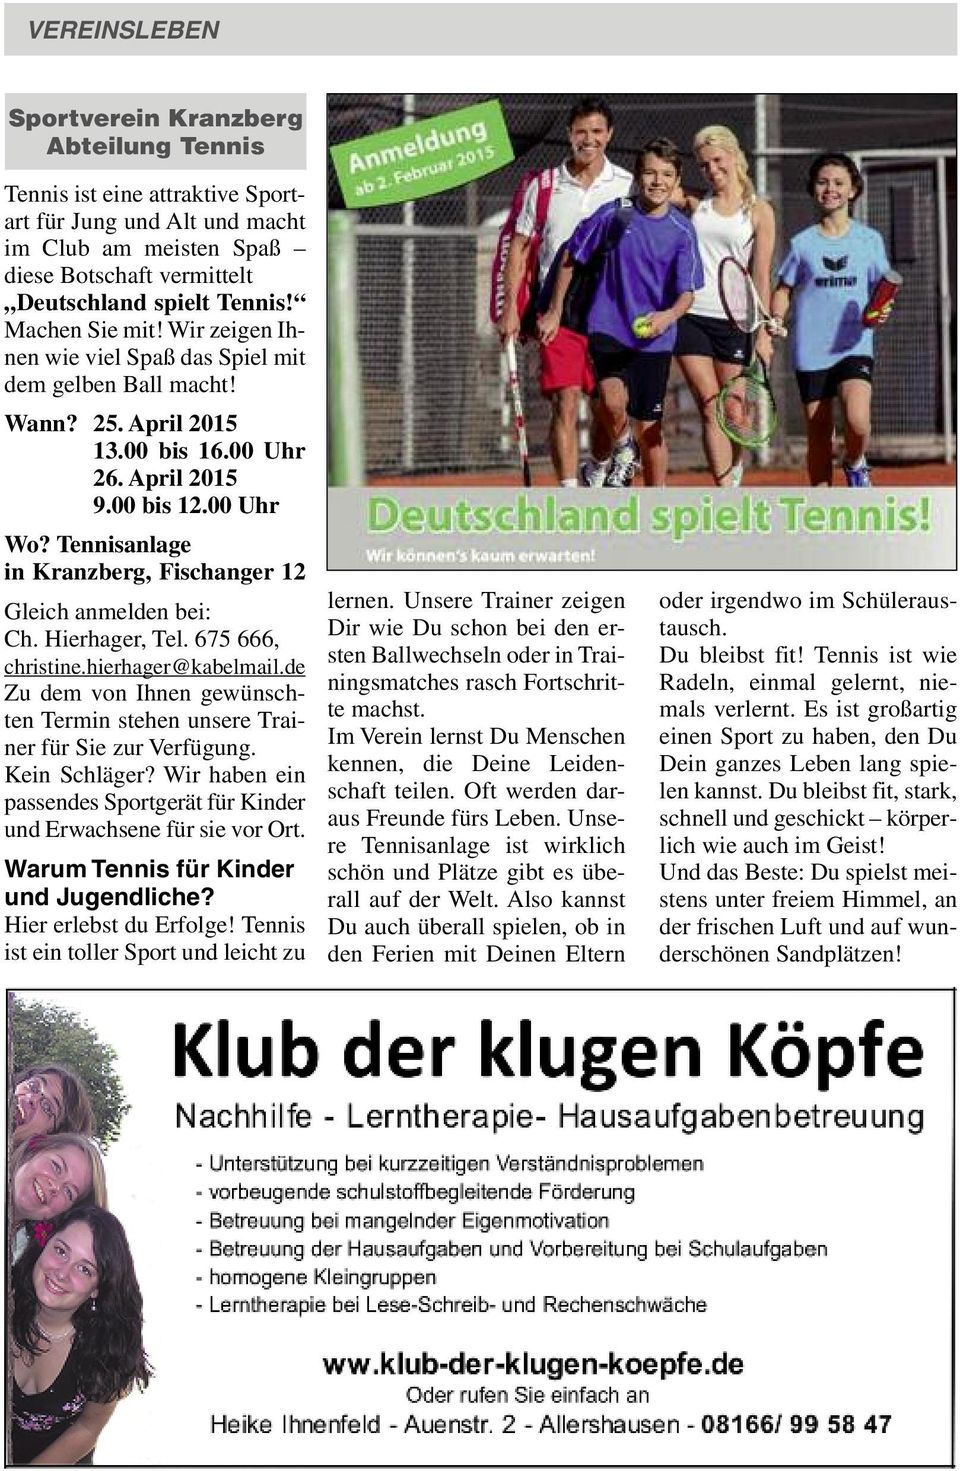 Tennisanlage in Kranzberg, Fischanger 12 Gleich anmelden bei: Ch. Hierhager, Tel. 675 666, christine.hierhager@kabelmail.